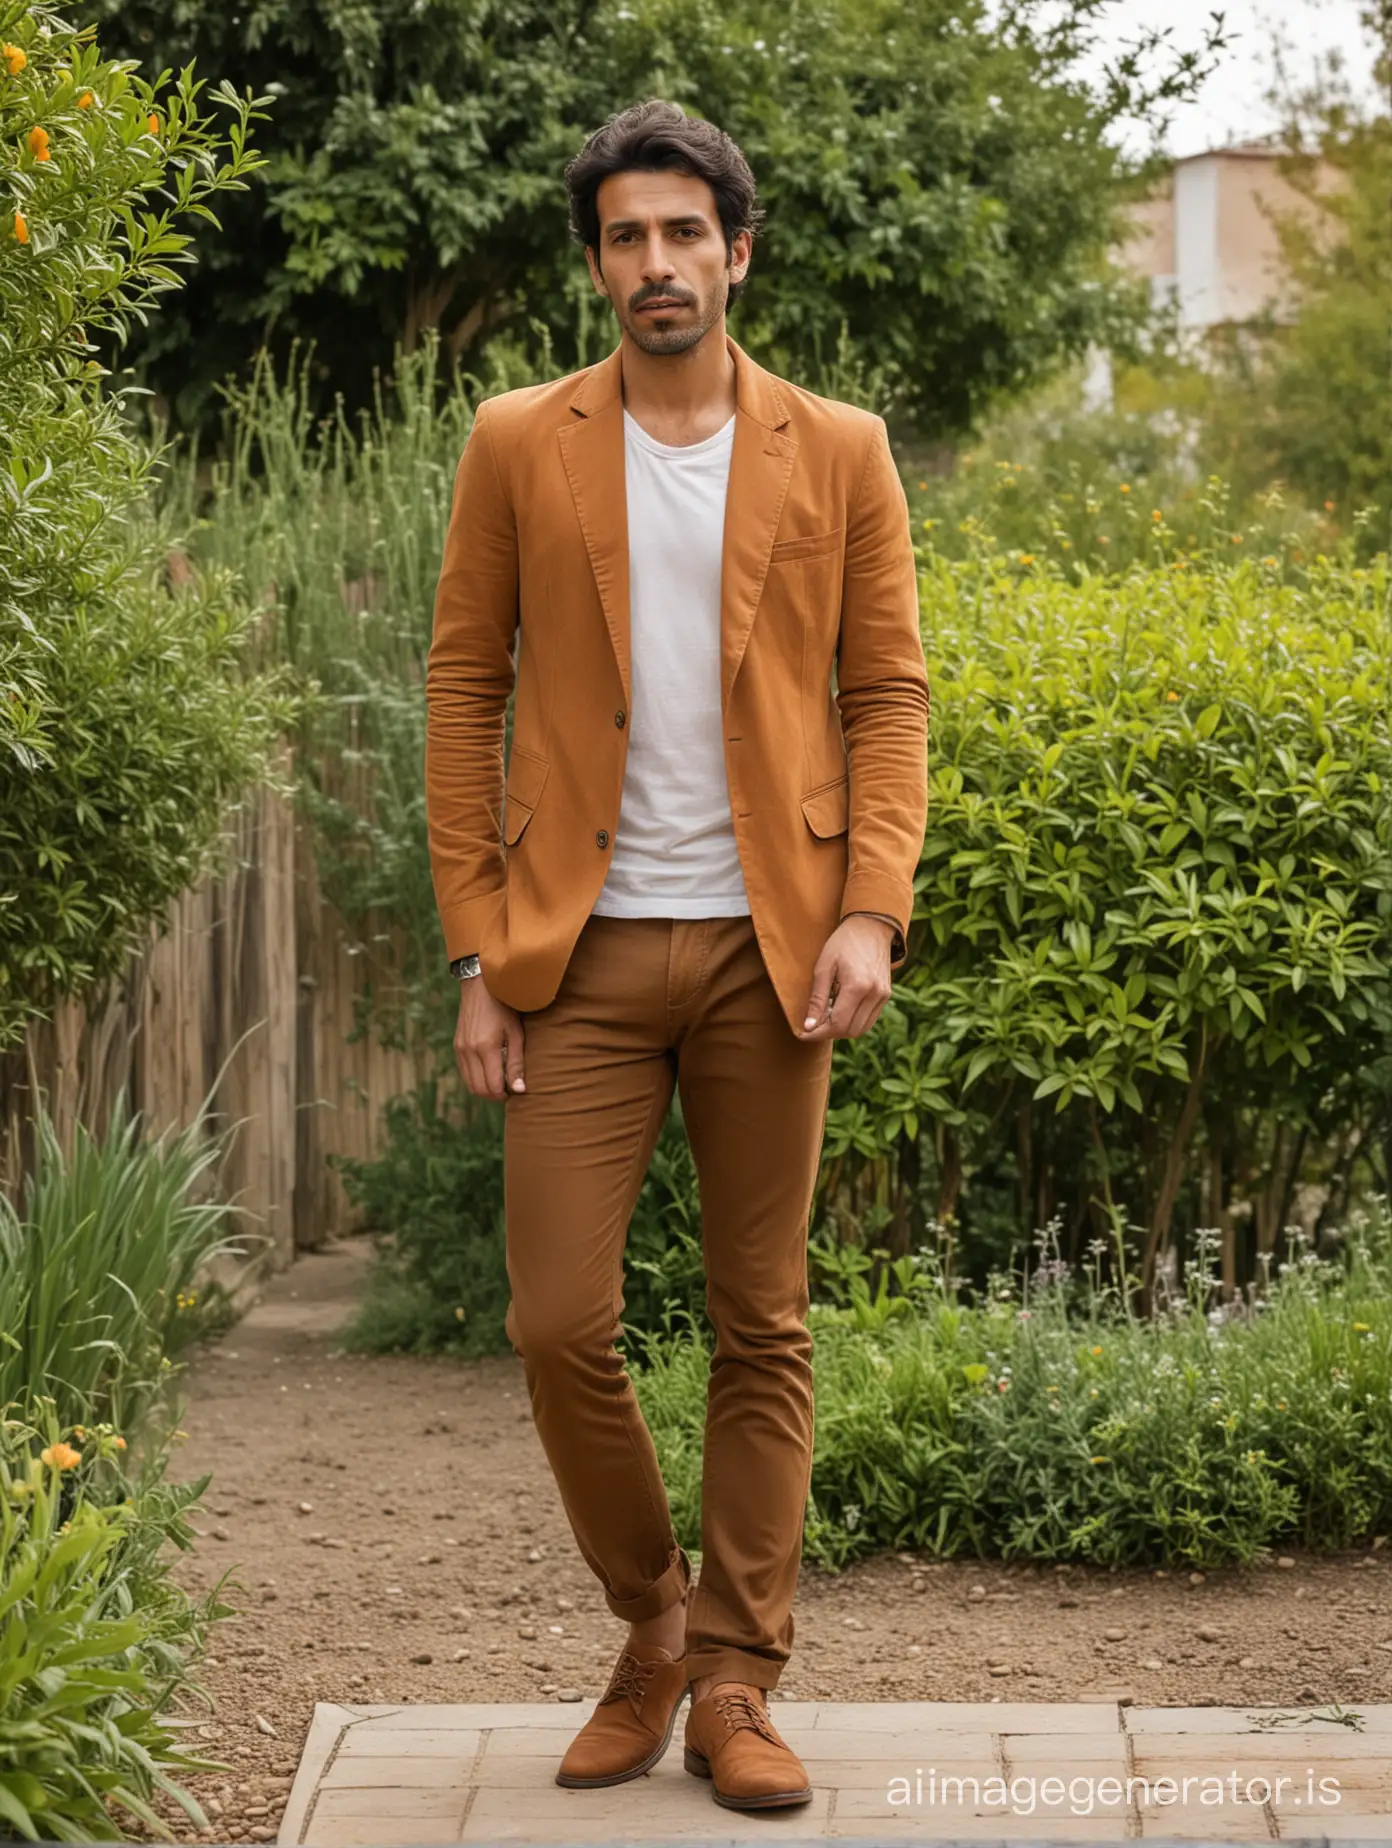 iranian skinny man 40 years old, smoking, wearing brown blazer, orange shirt, brown pants, brown shoes, black hair, standing in a garden ,full body shot